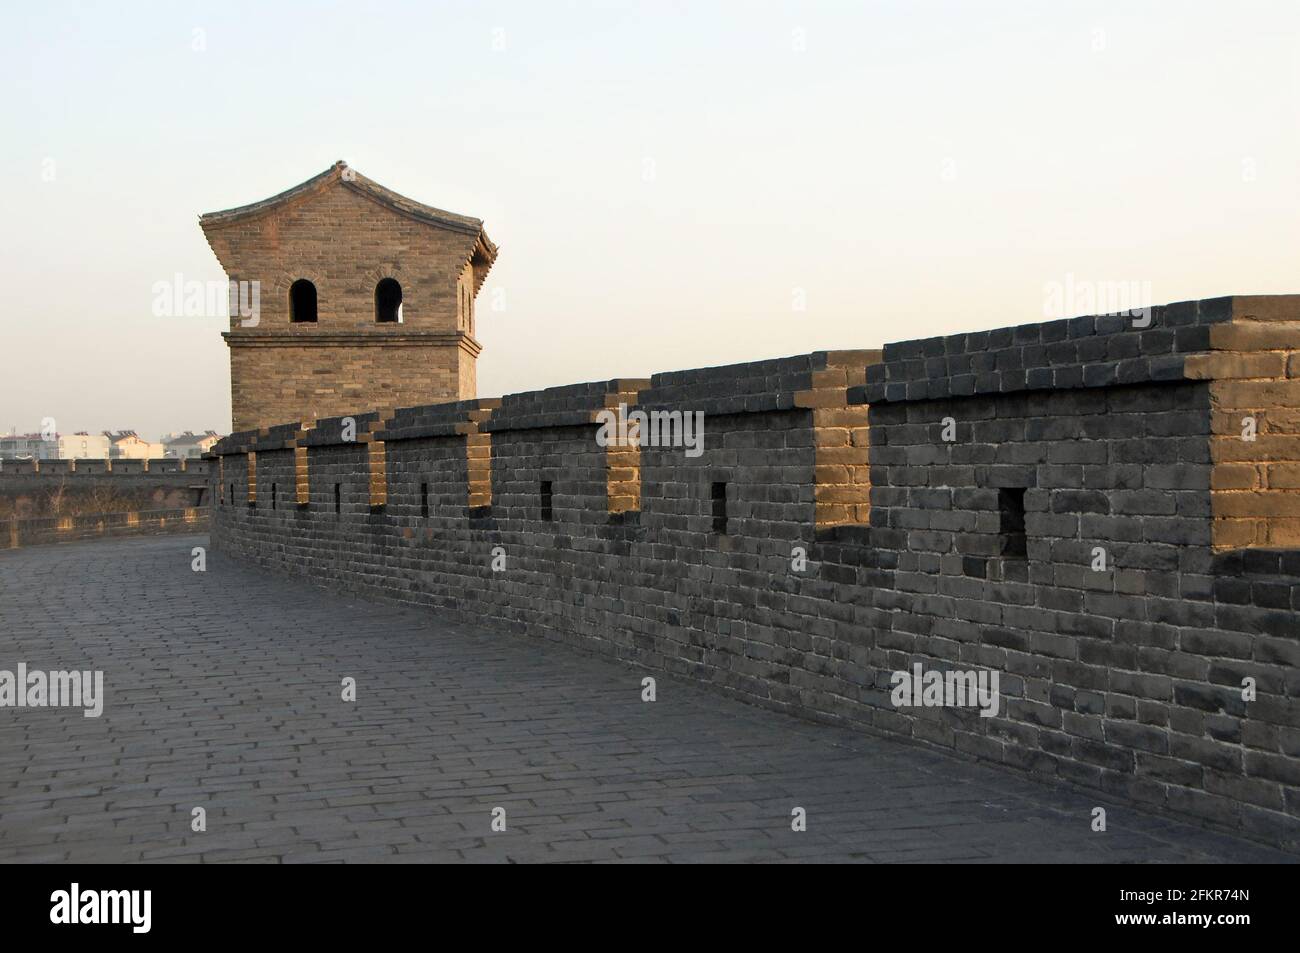 Pingyao dans la province du Shanxi, Chine. Mur de la ville de Pingyao avec une tour de guet vue depuis les remparts au soleil du soir. Banque D'Images